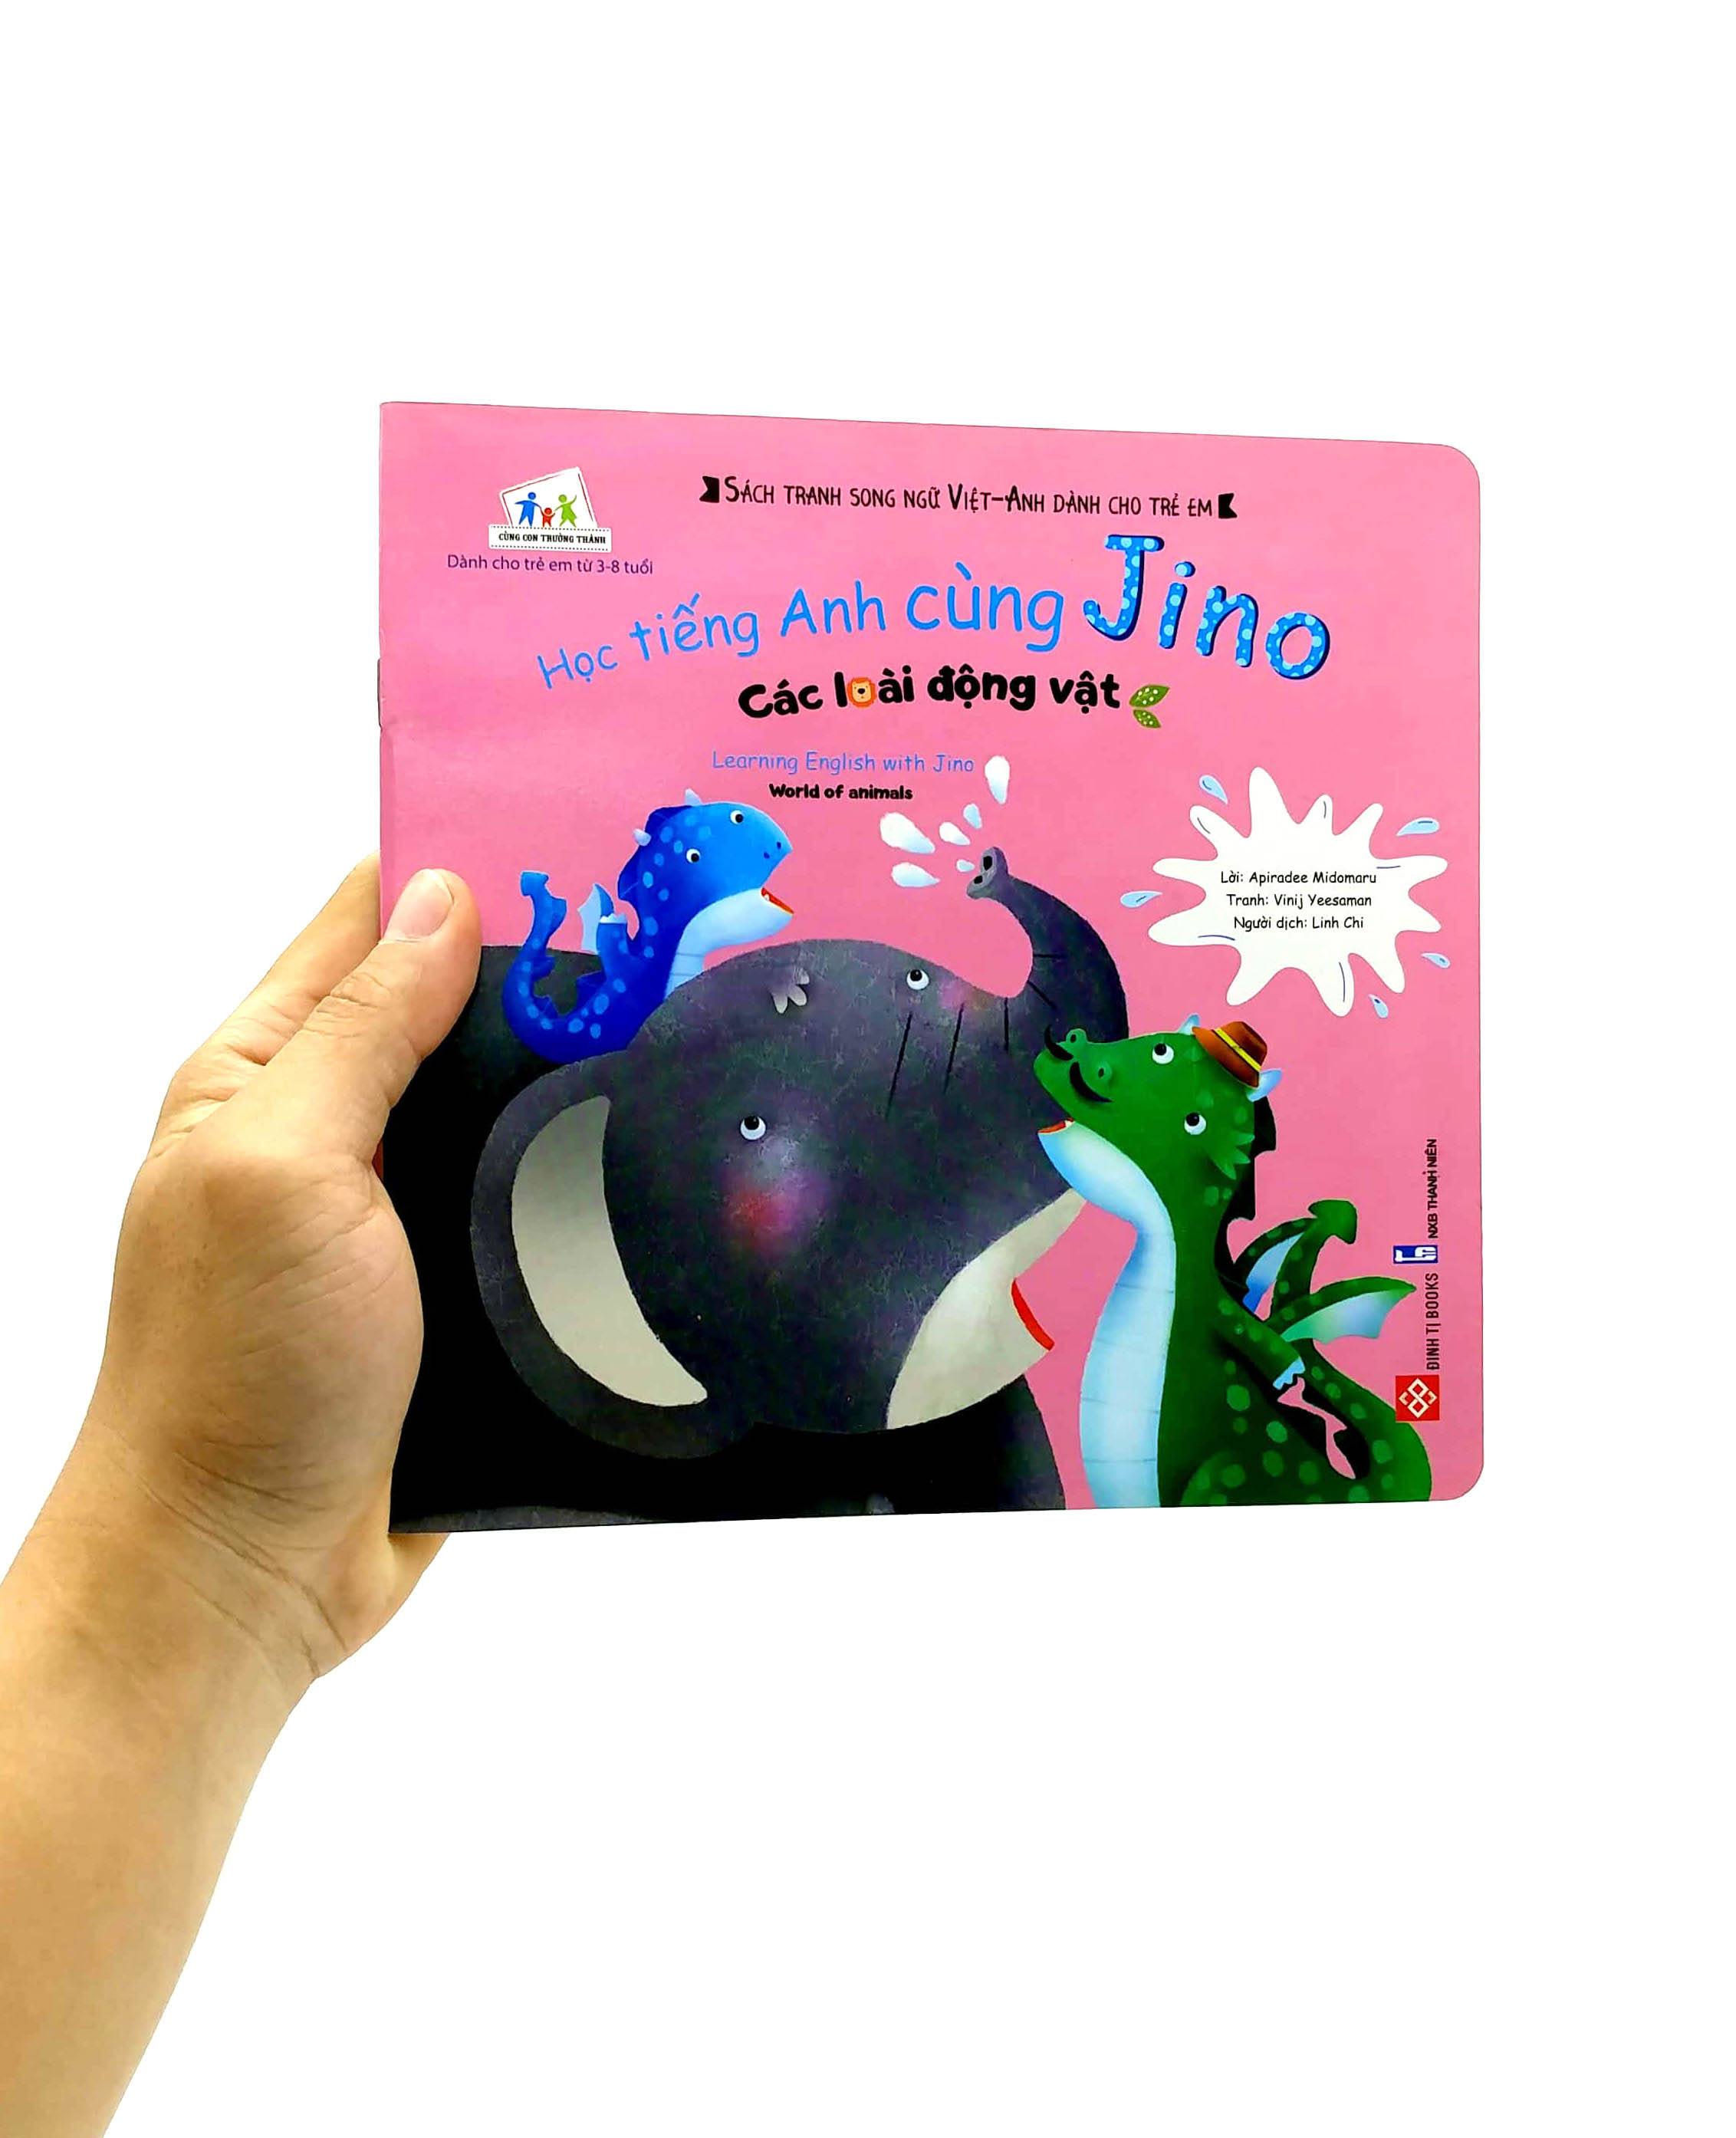 Học Tiếng Anh Cùng Jino - Learning English With Jino - Các Loài Động Vật - World Of Animals PDF